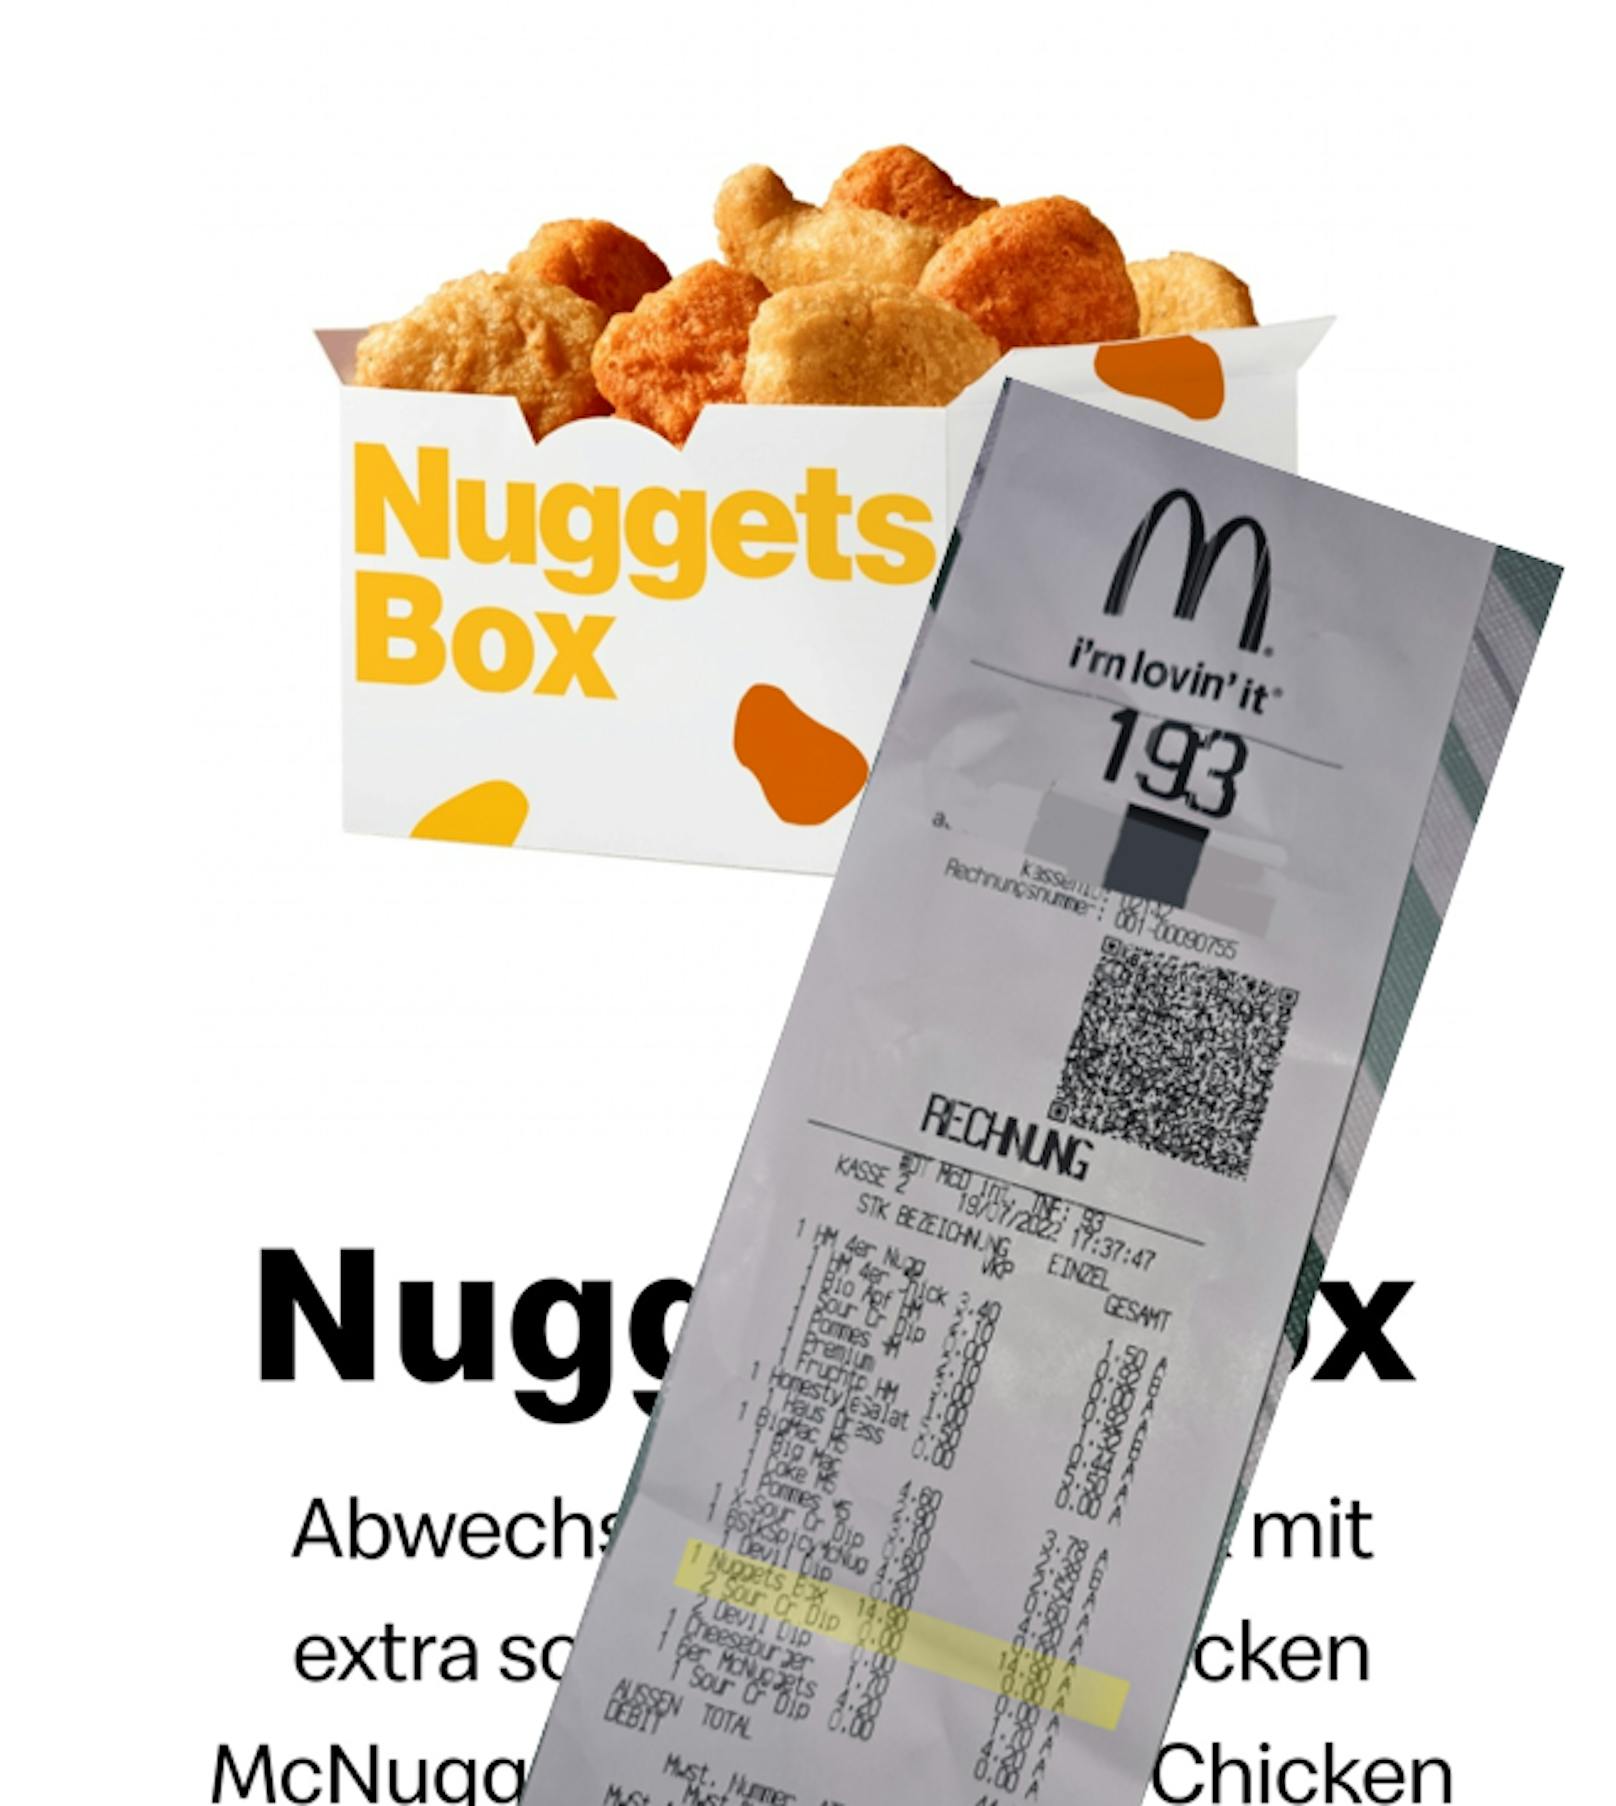 Statt 13,90 Euro kostet die Nugget-Box jetzt 14,90.